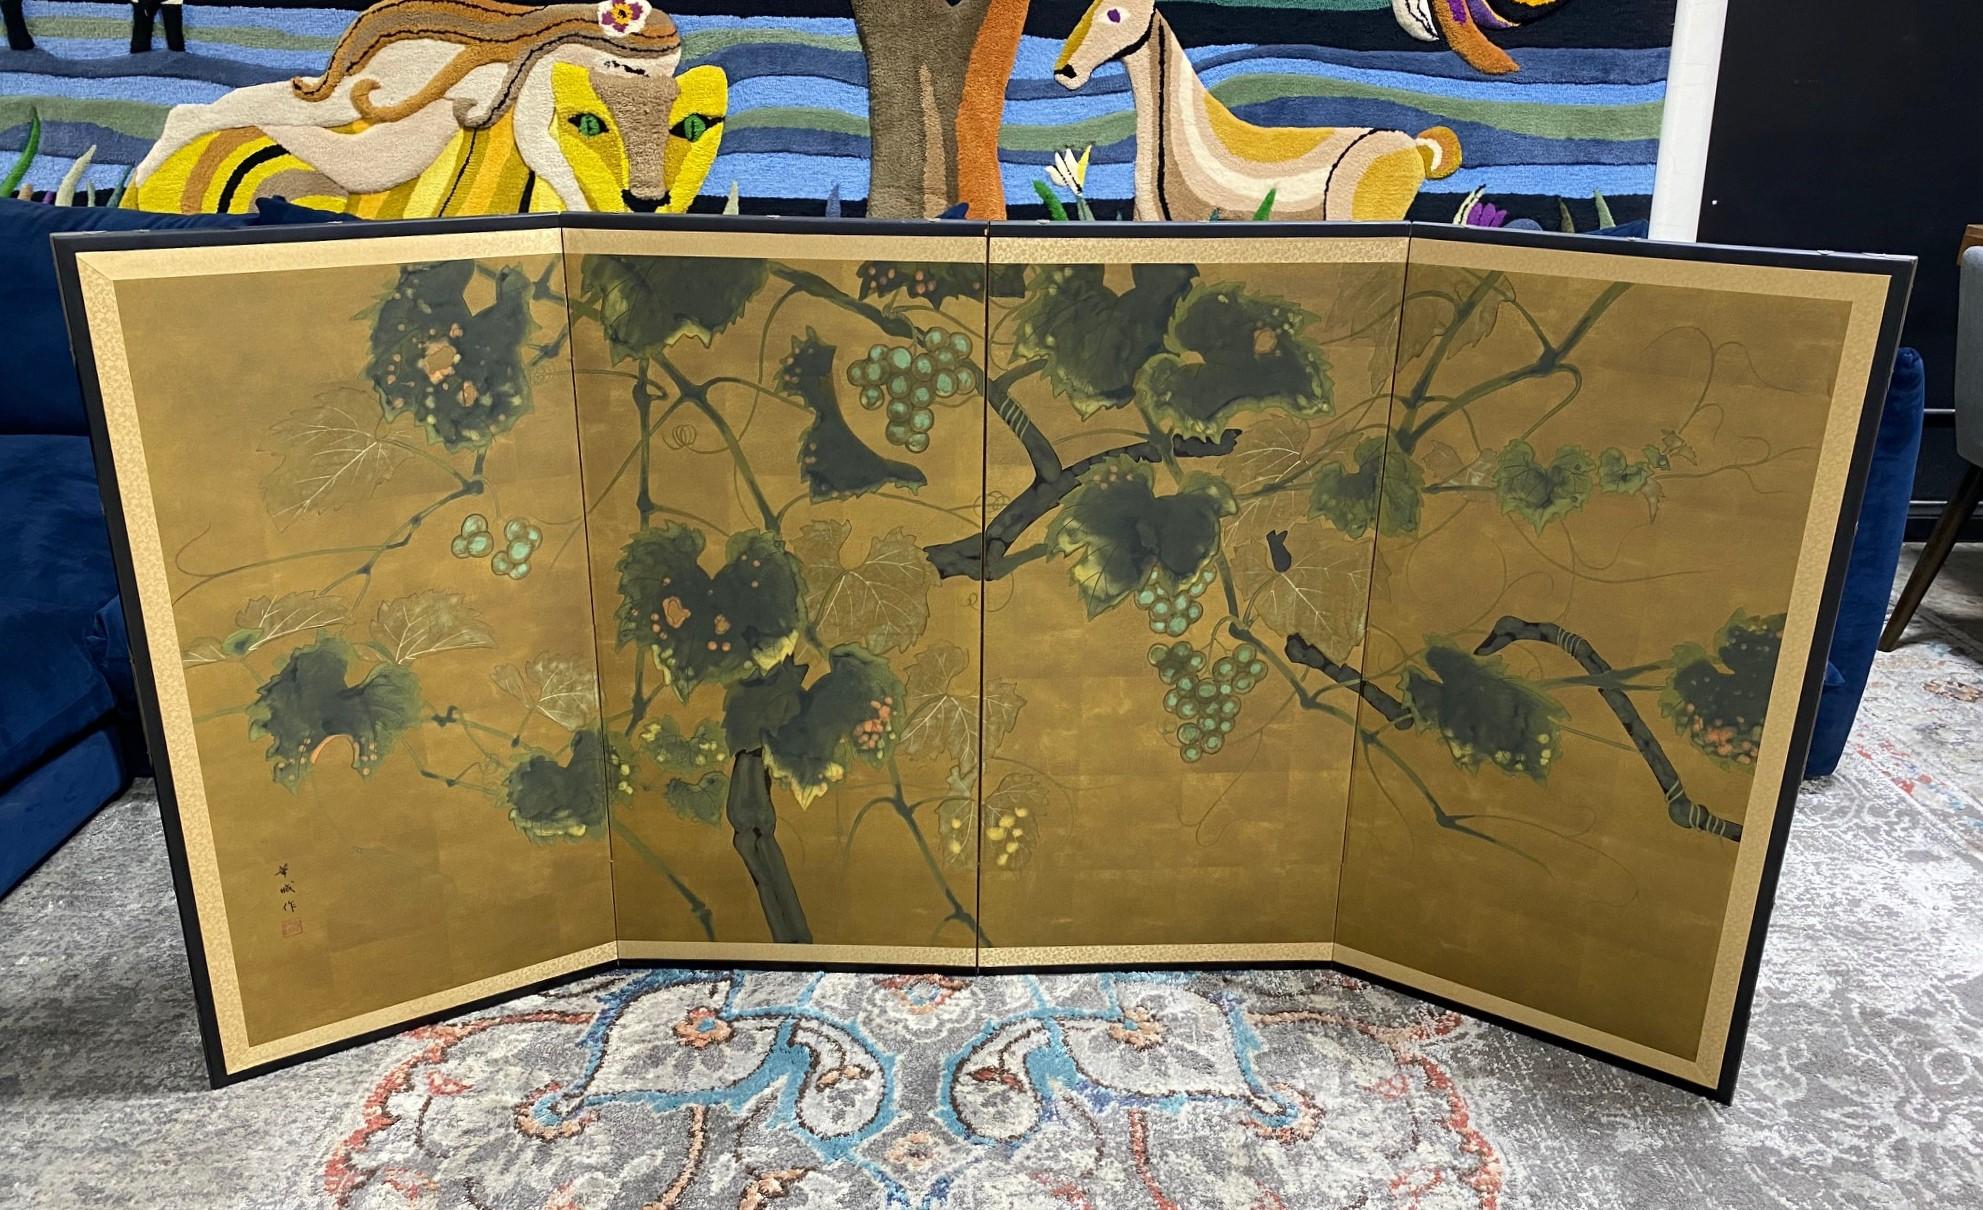 Magnifique paravent japonais Byobu à quatre panneaux représentant une scène de nature avec un lotus en pleine floraison. Les couleurs subtiles mais riches, la feuille d'or et les magnifiques détails peints à la main de l'arbre et des fruits